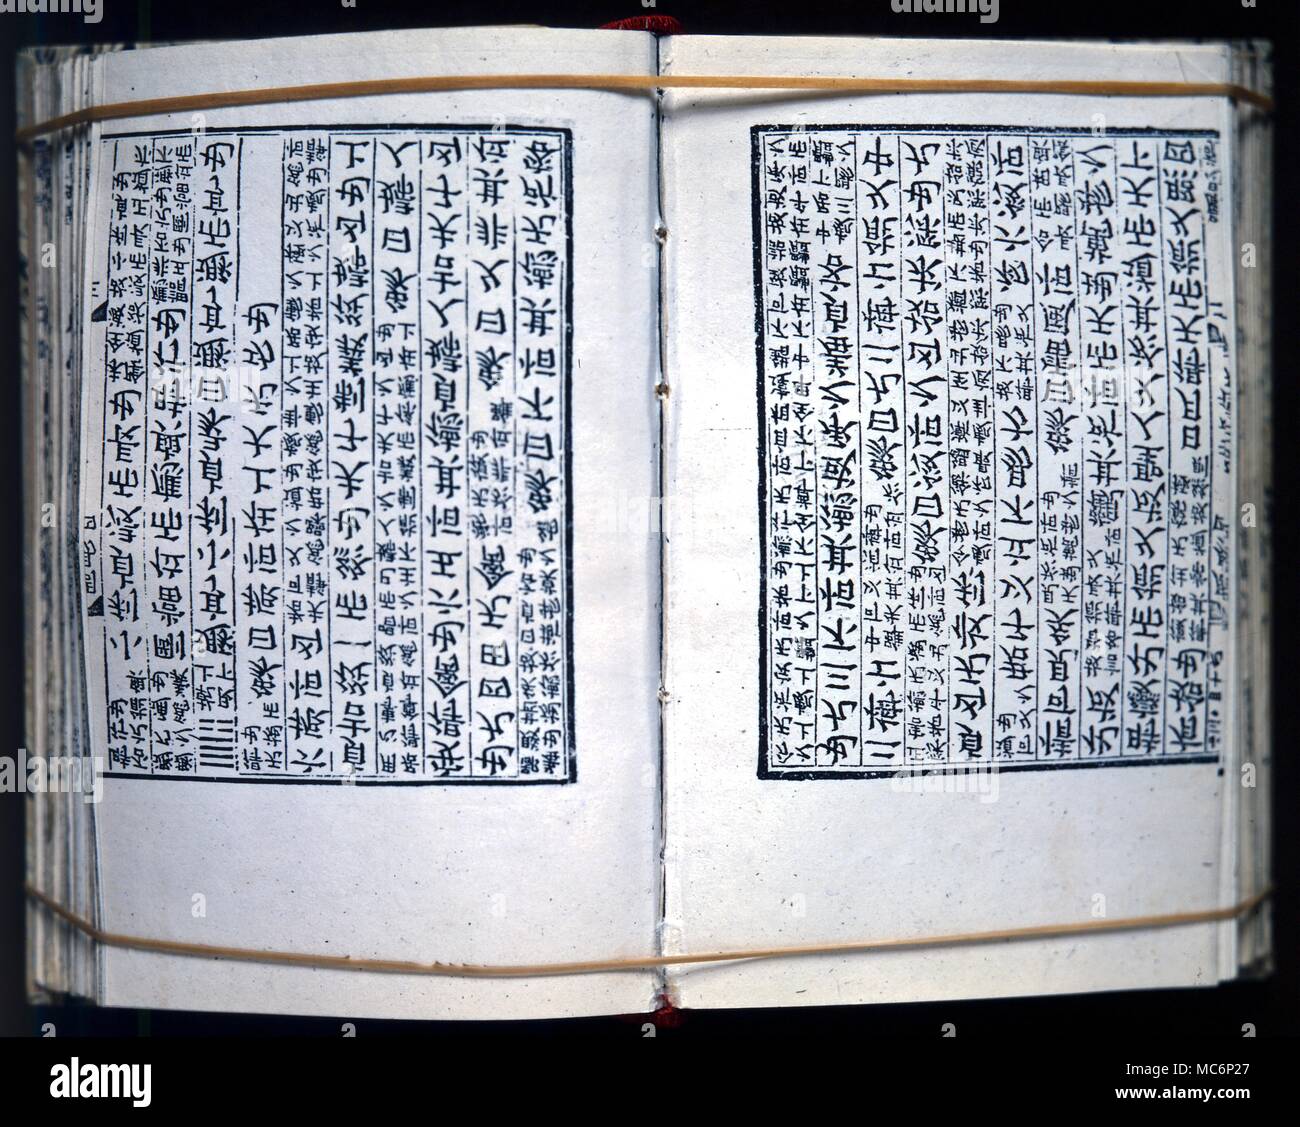 Divination, Buch der Änderungen Seite Öffnen des 10. Jahrhunderts Chinesische blockbook Ausgabe der Divinatorischen Text des "I Ching" oder Buch der Änderungen. Stockfoto